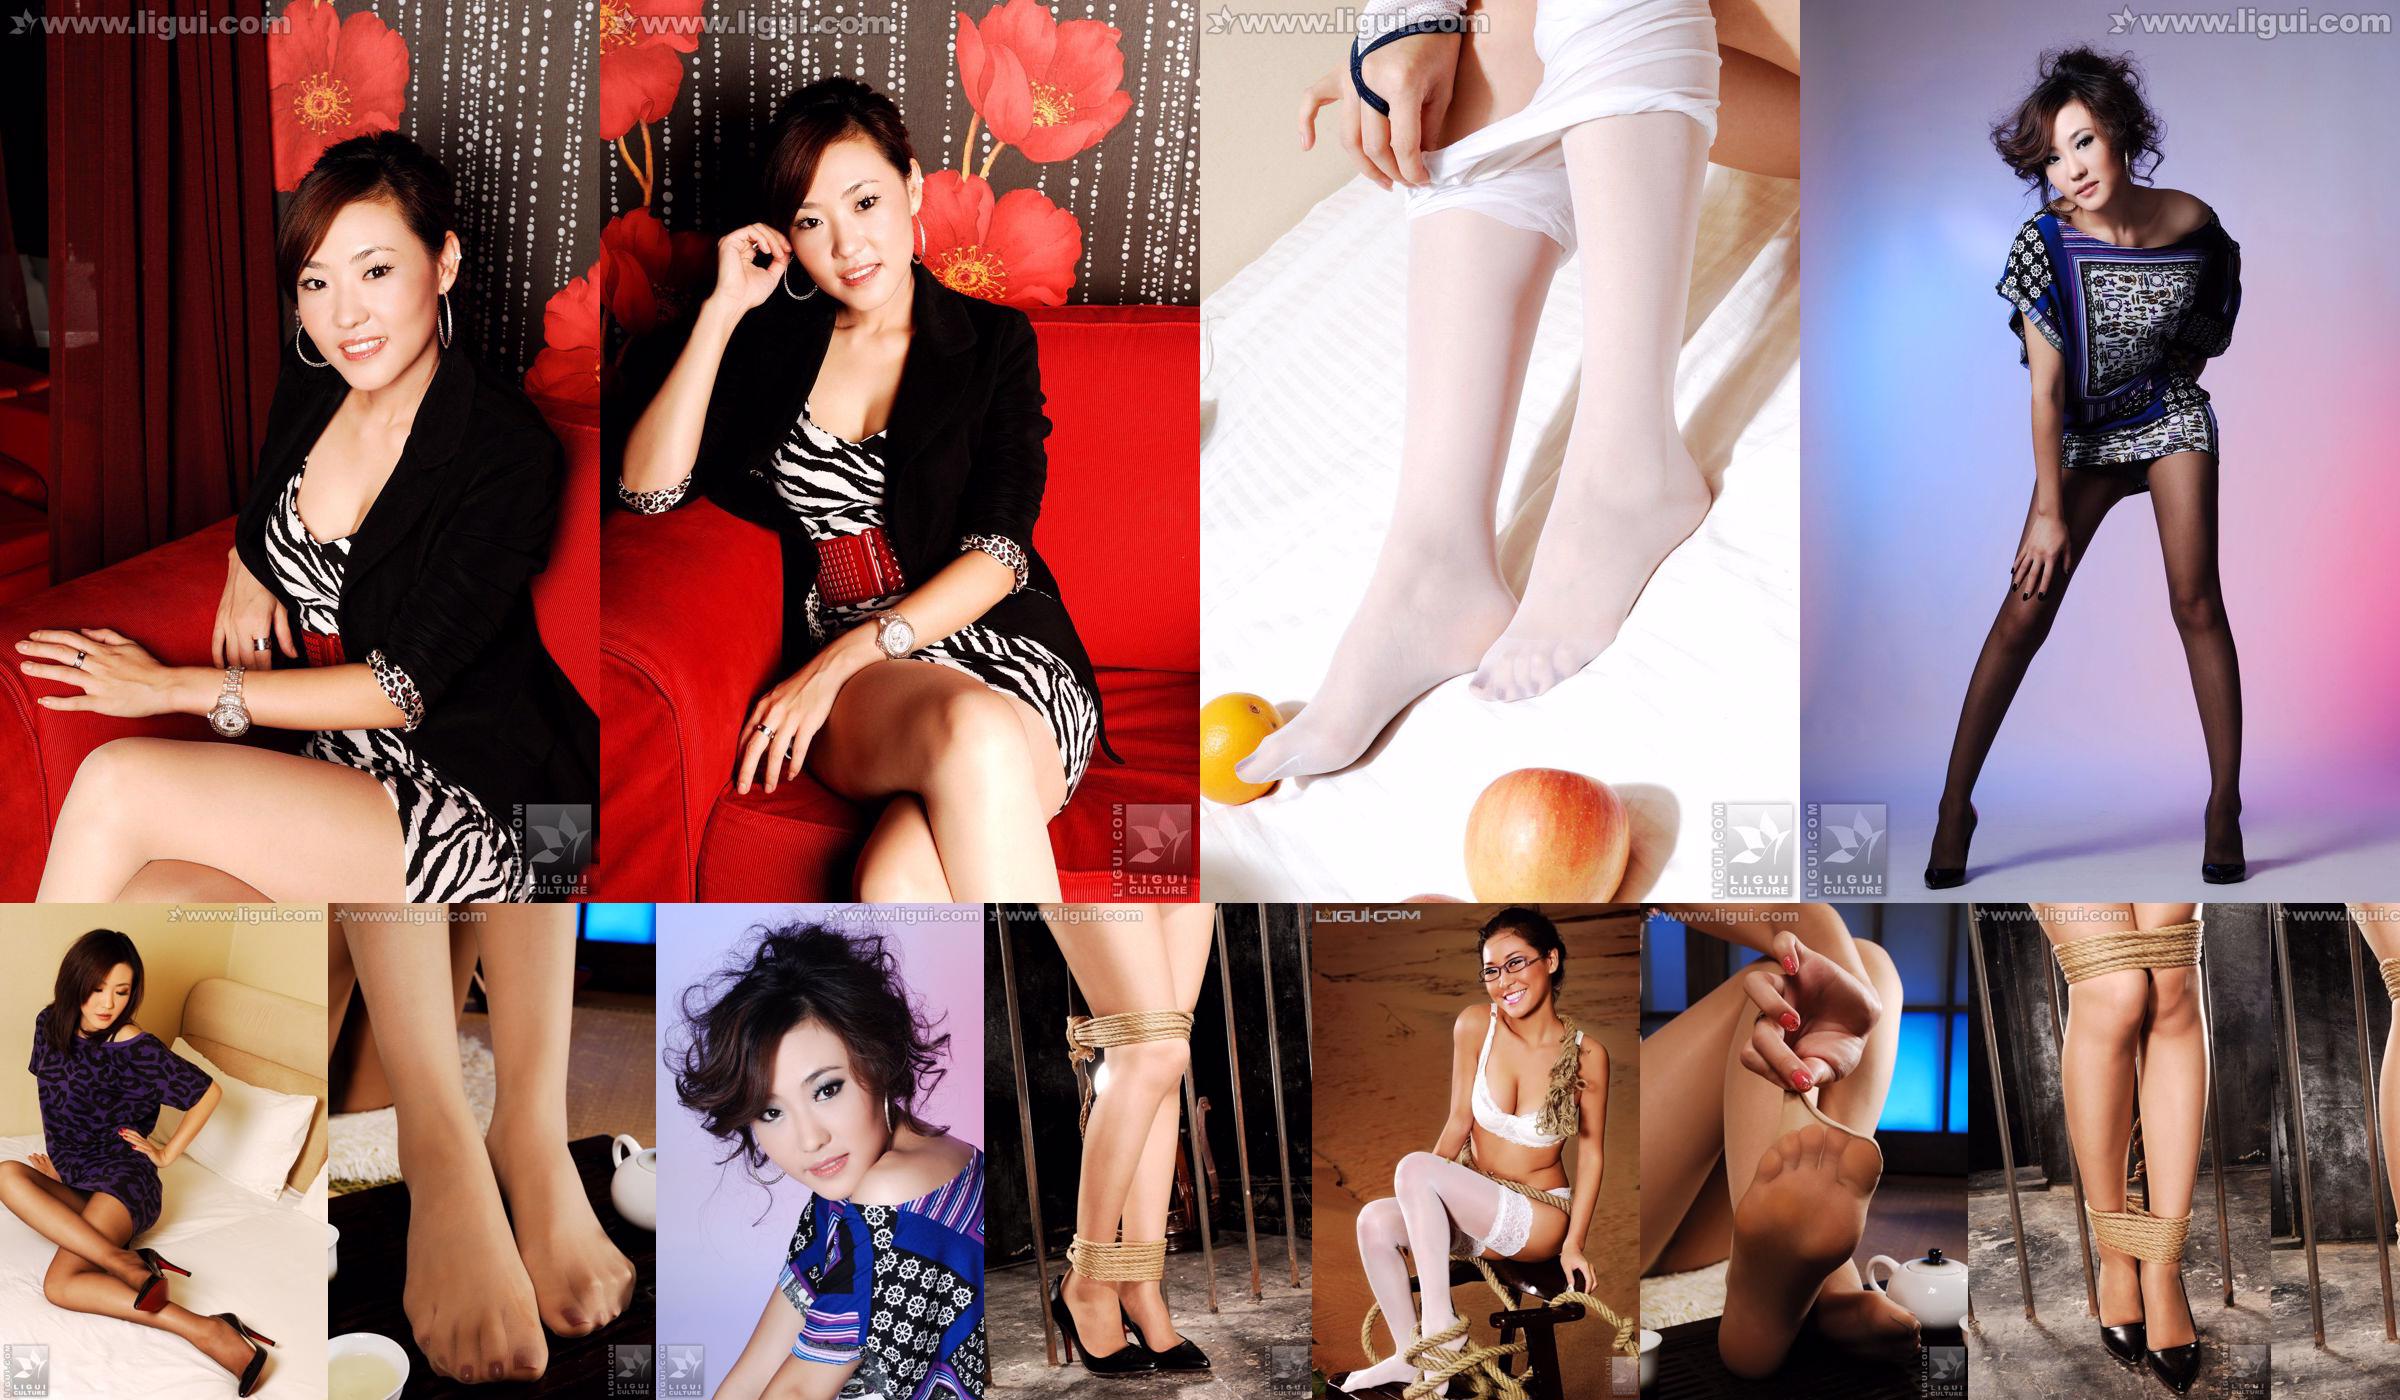 นางแบบ CoCo "High-heeled Charm under Professional Wear" [丽柜 LiGui] รูปถ่ายขาสวยและเท้าหยก No.75911e หน้า 1